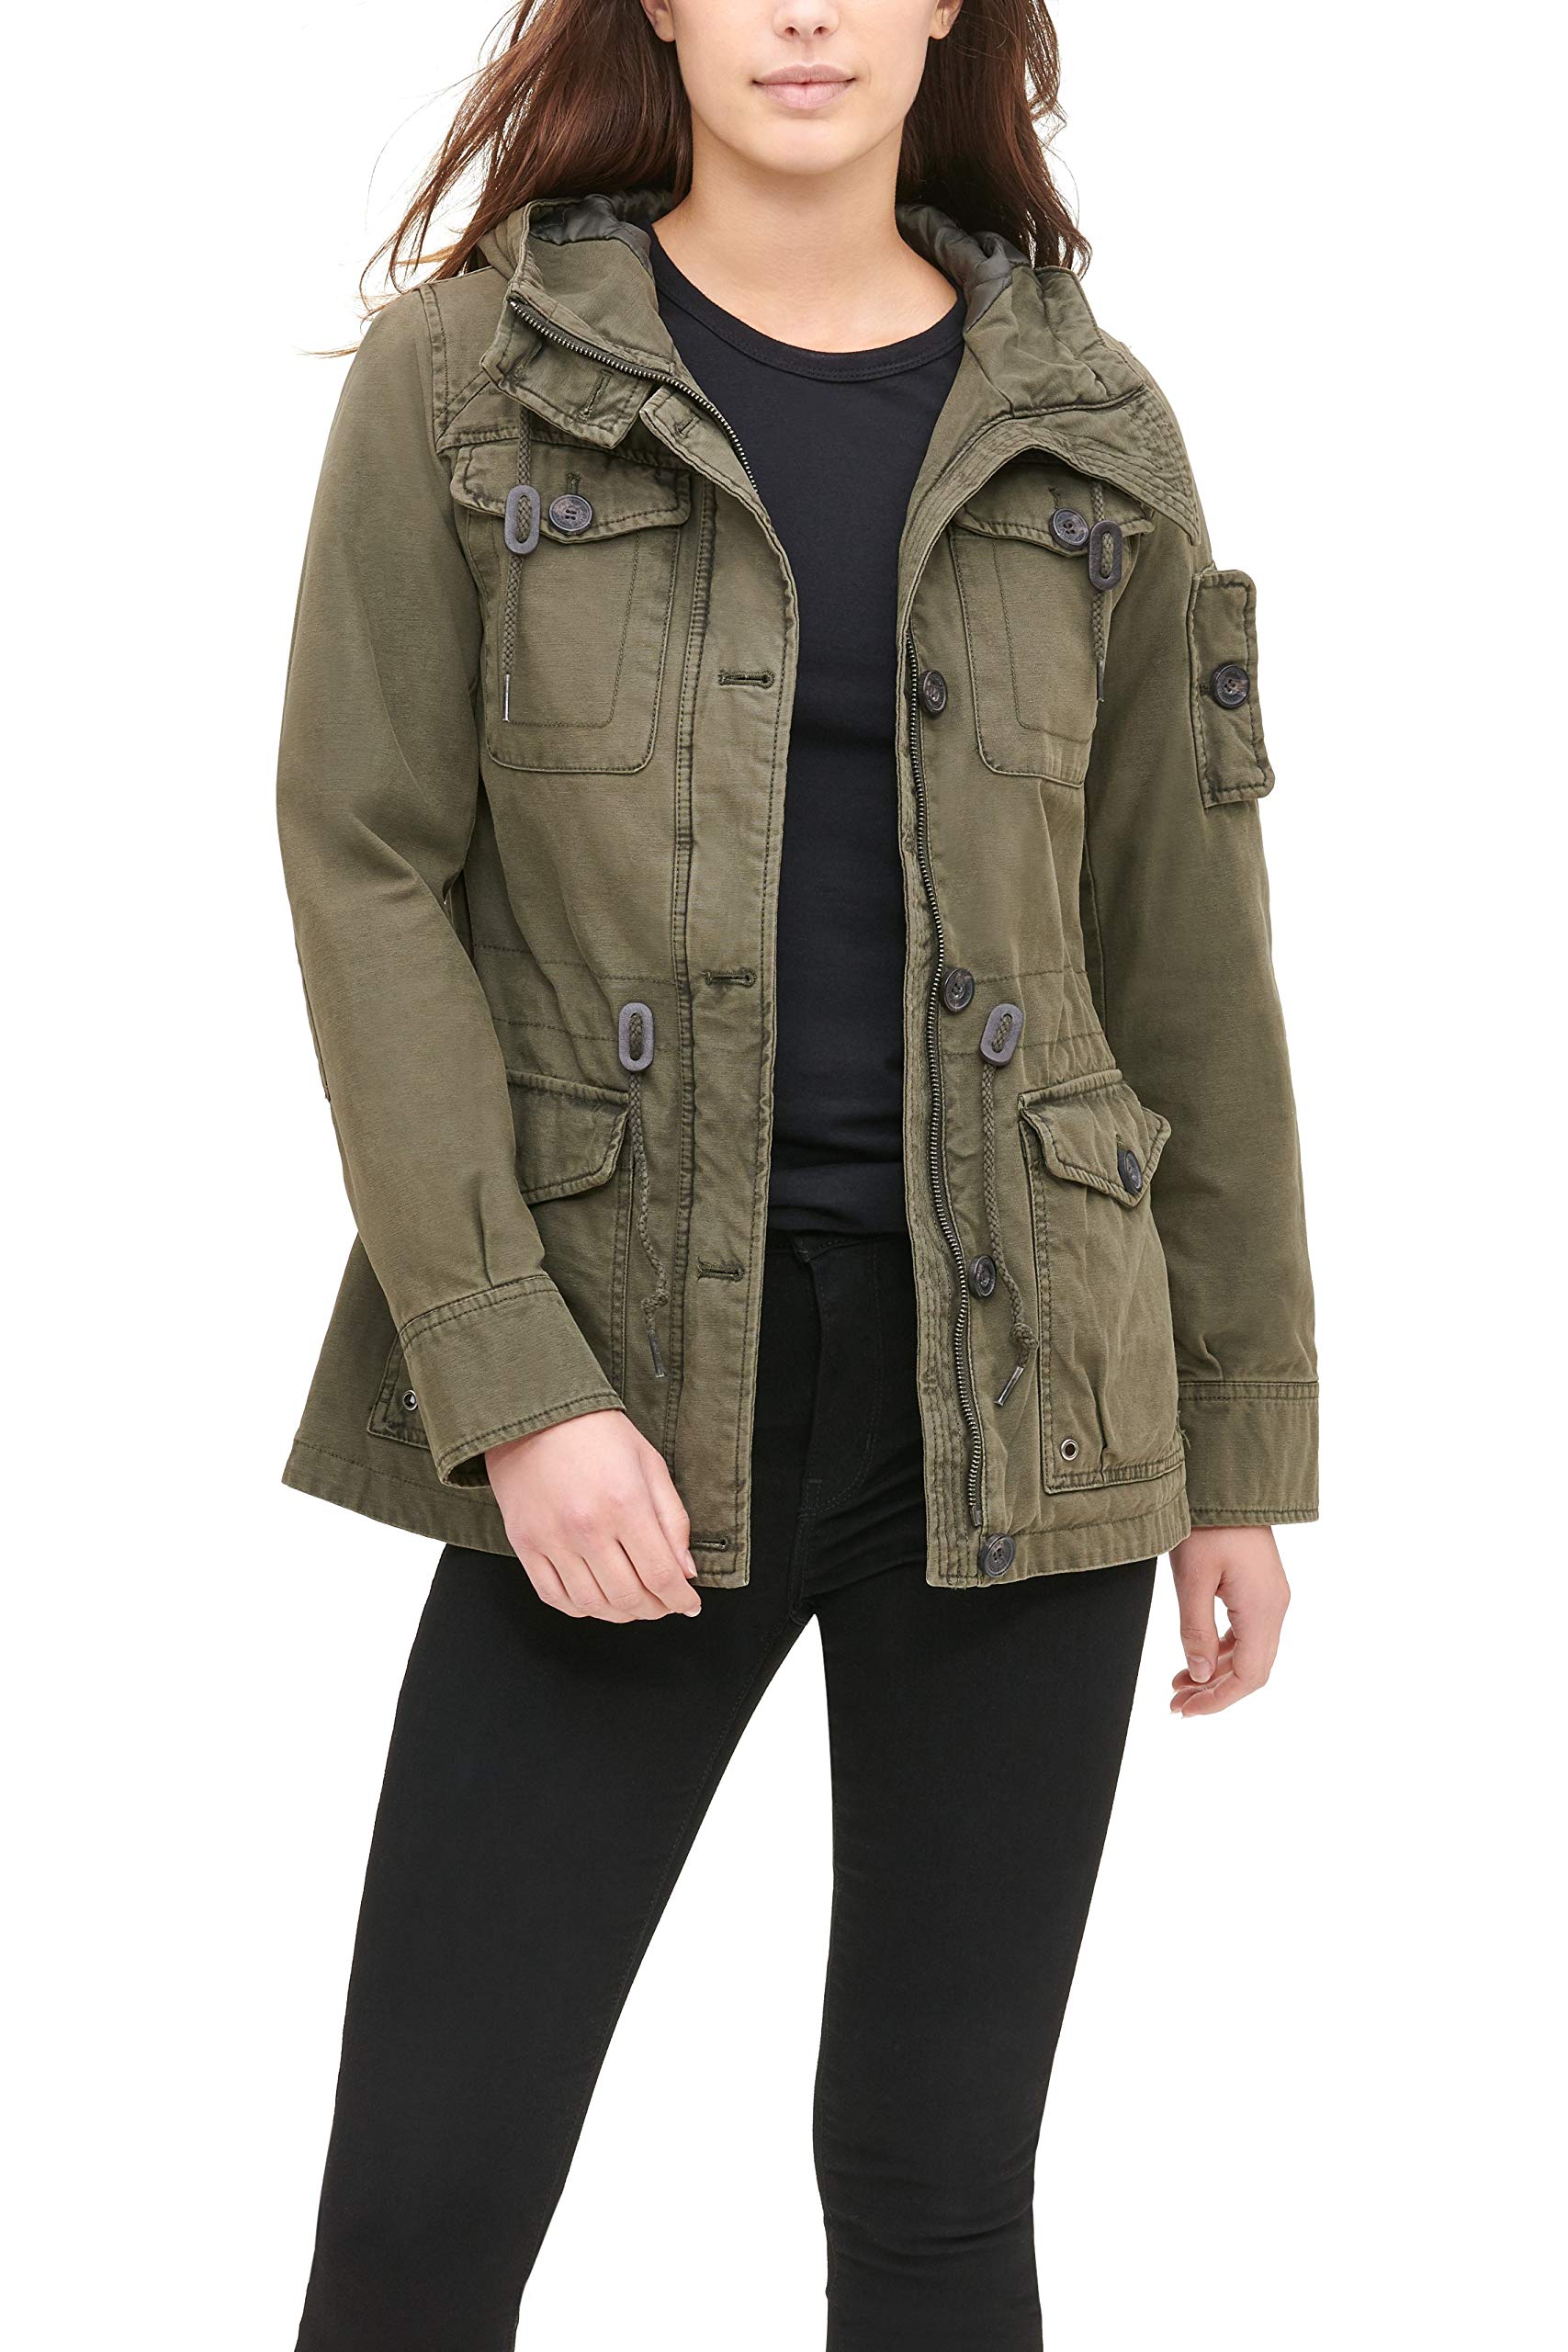 Levi's Women's Cotton Hooded Field Jacket (Standard & Plus Sizes)